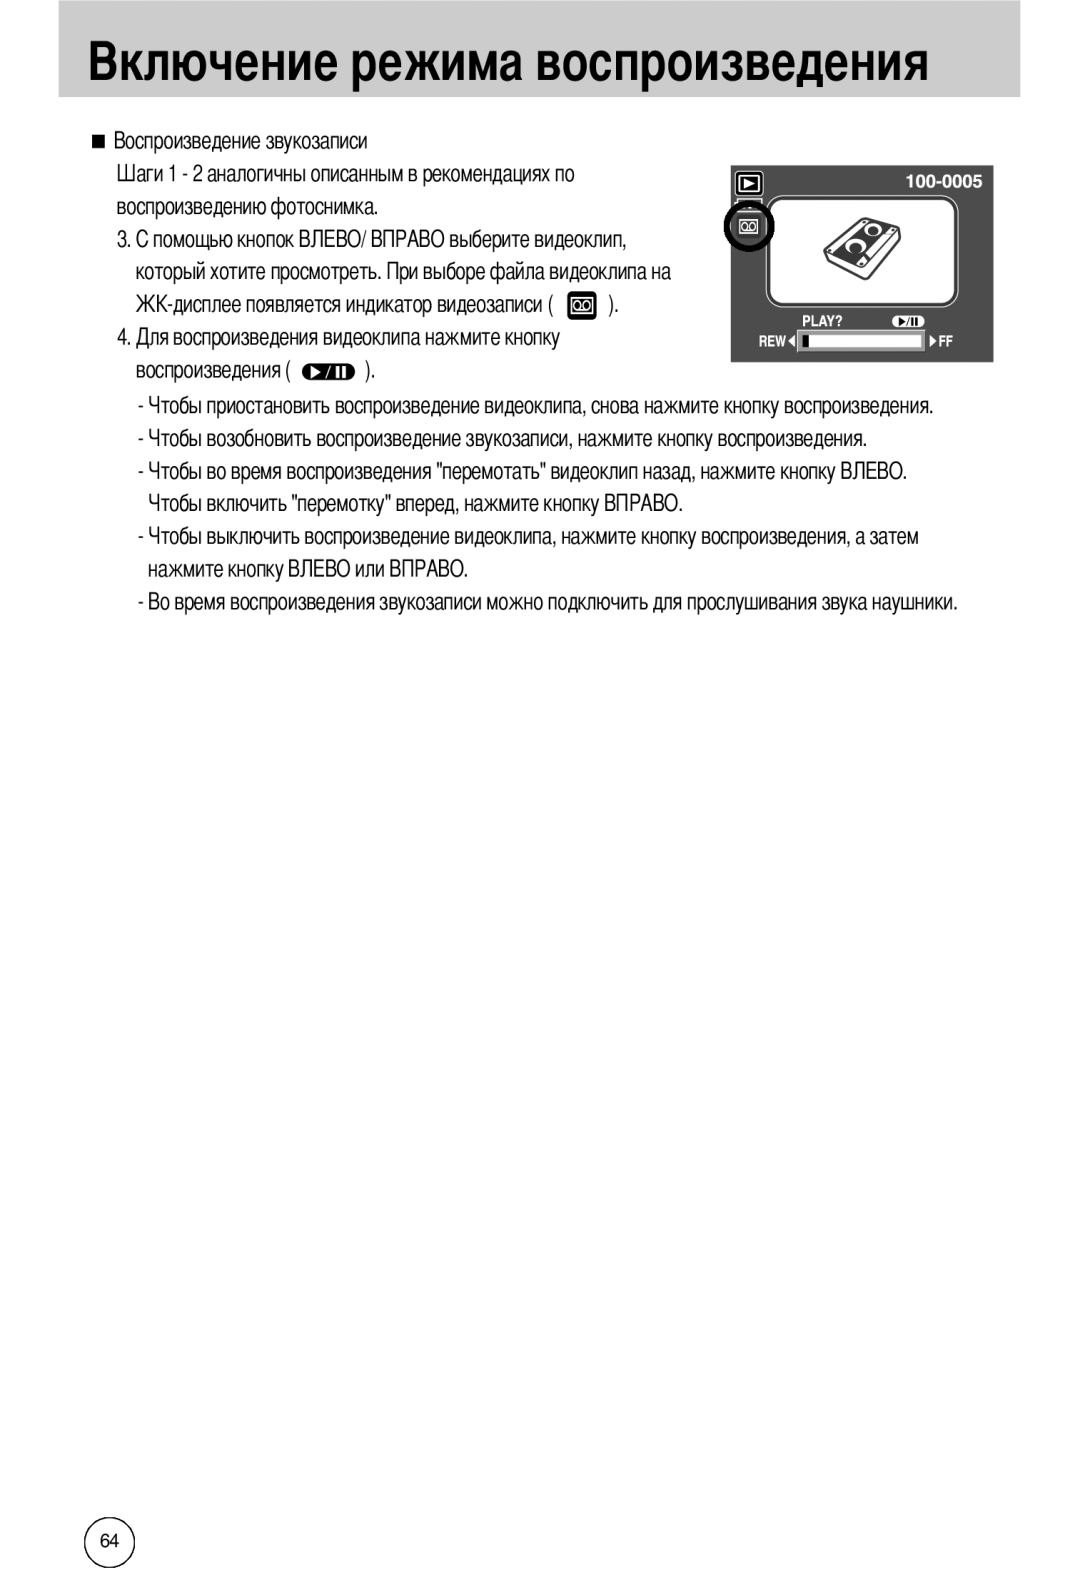 Samsung EC-I50ZZBBA/DE manual воспроизведению фотоснимка который хотите просмотреть, воспроизведения, нажмите кнопку 